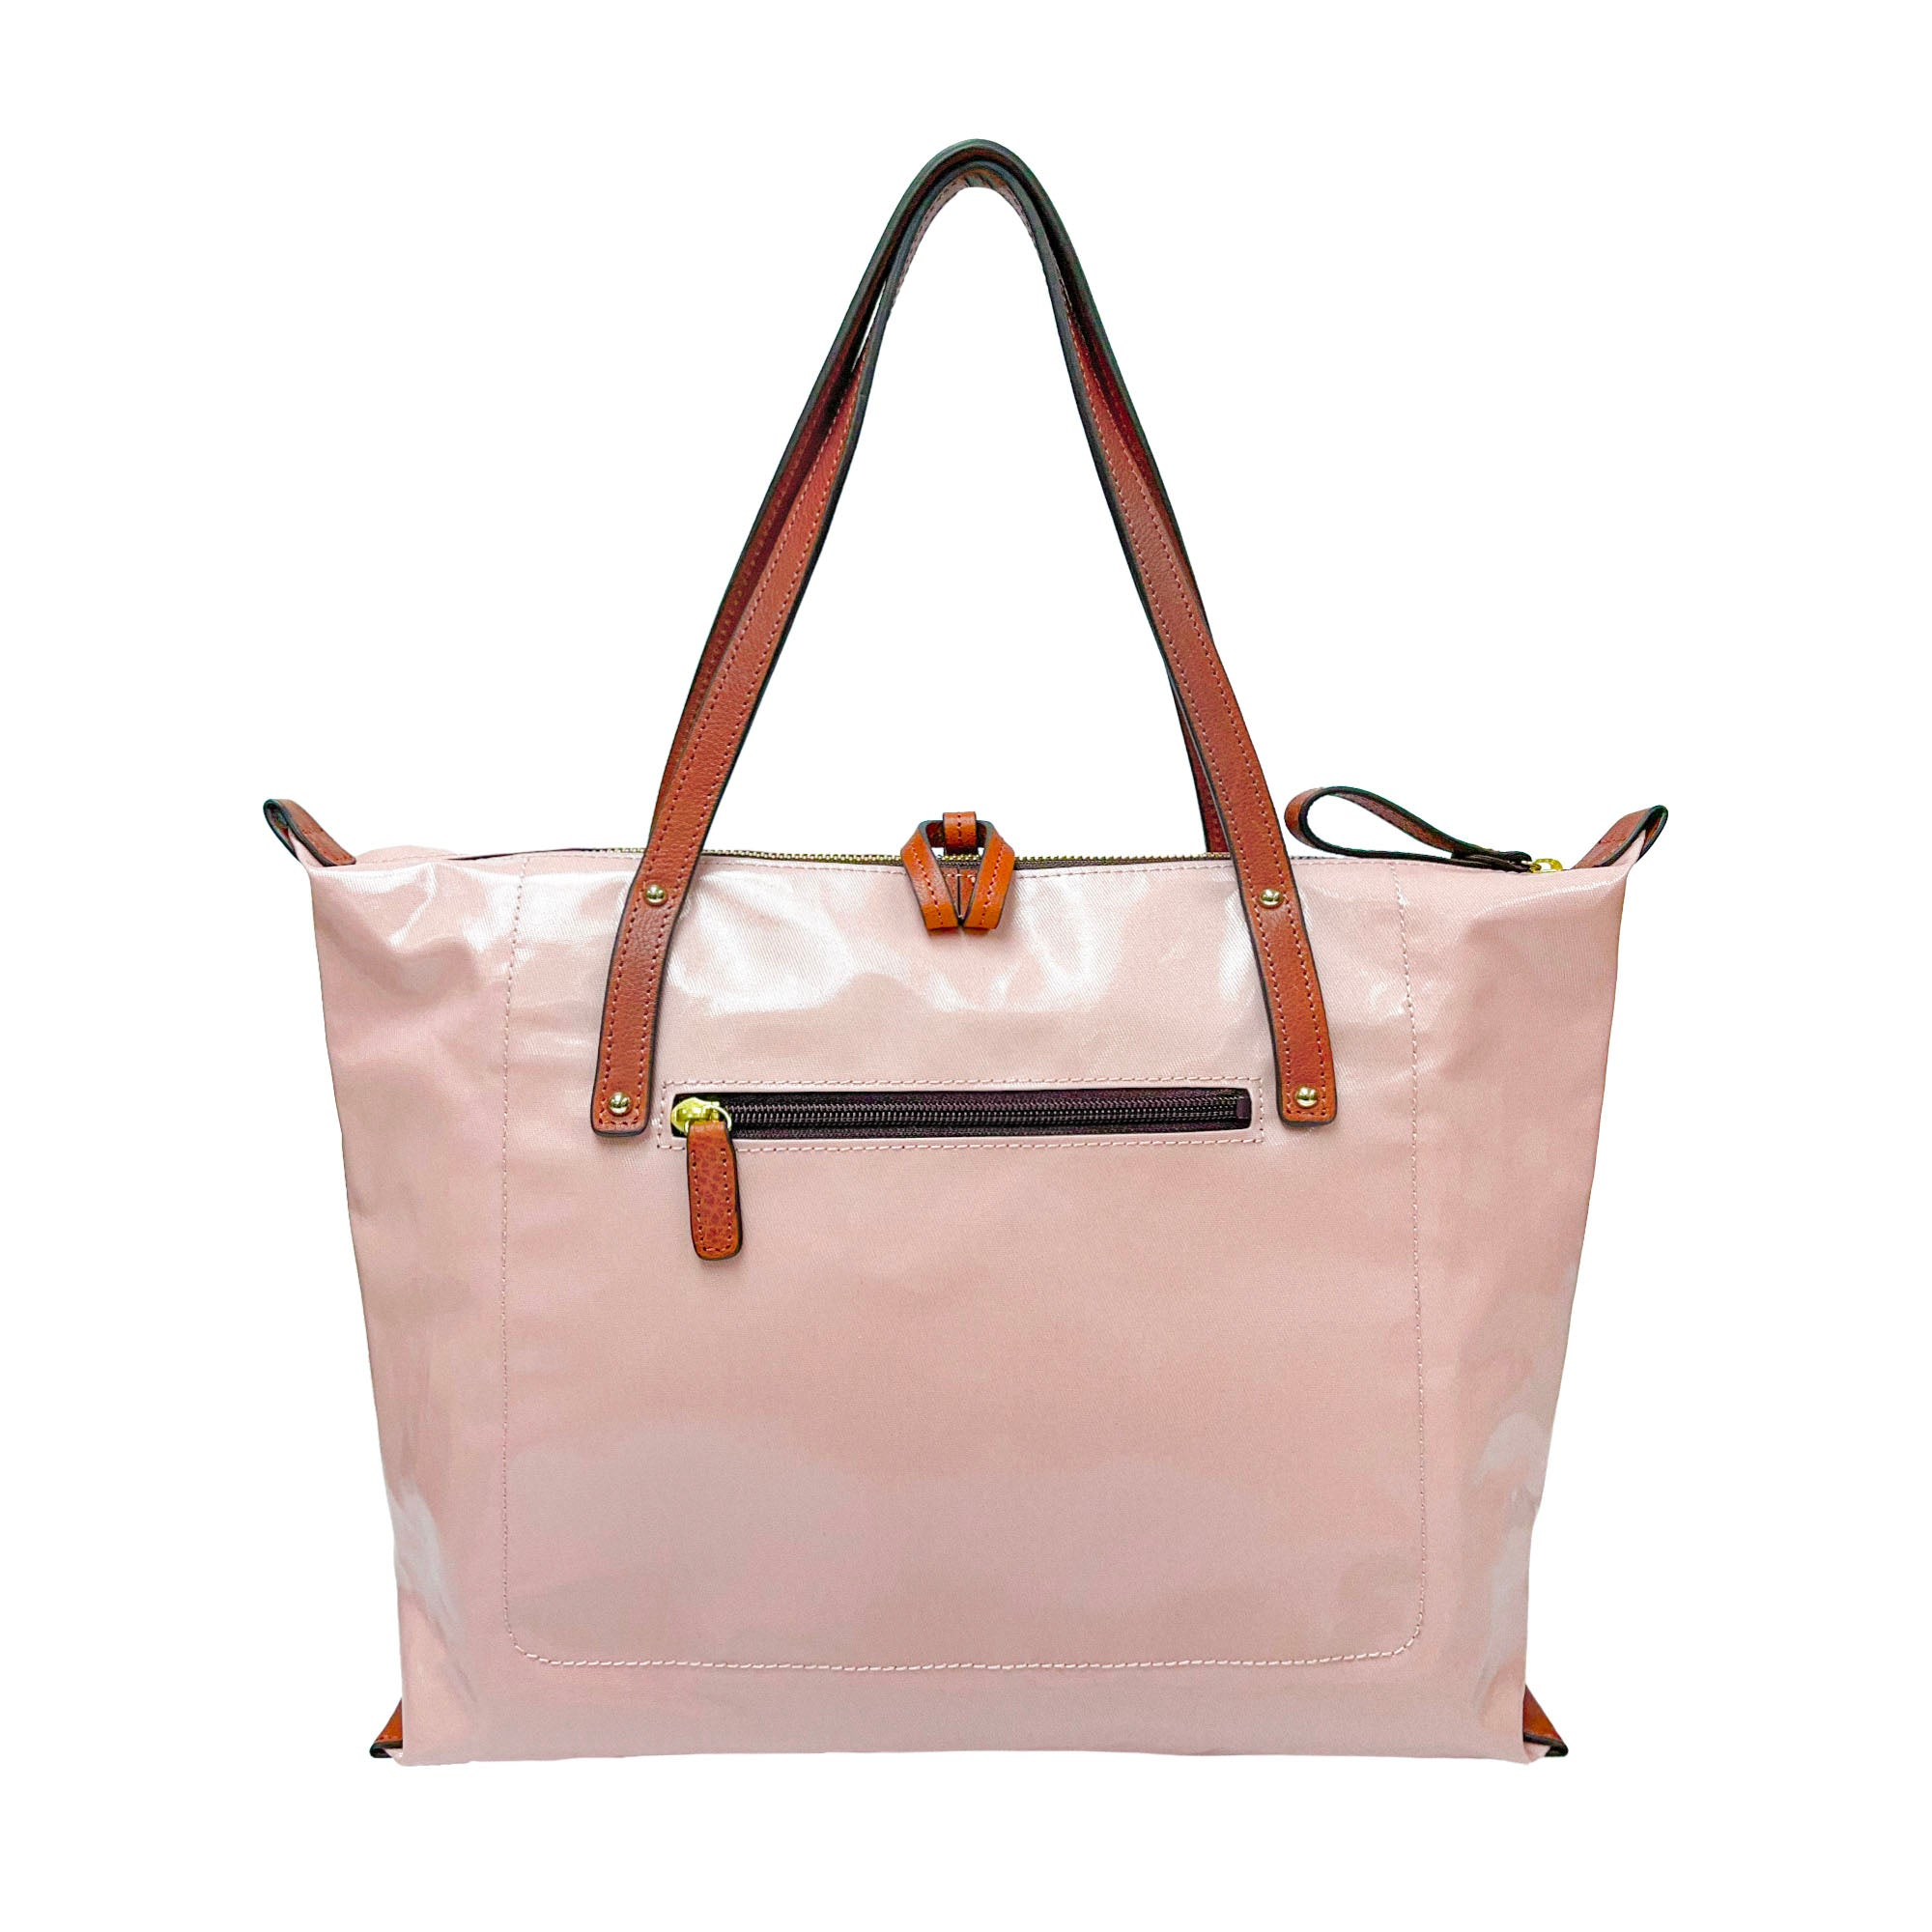 【NEW】LIFE |  Waterproof Tote Bag (Baby Pink)